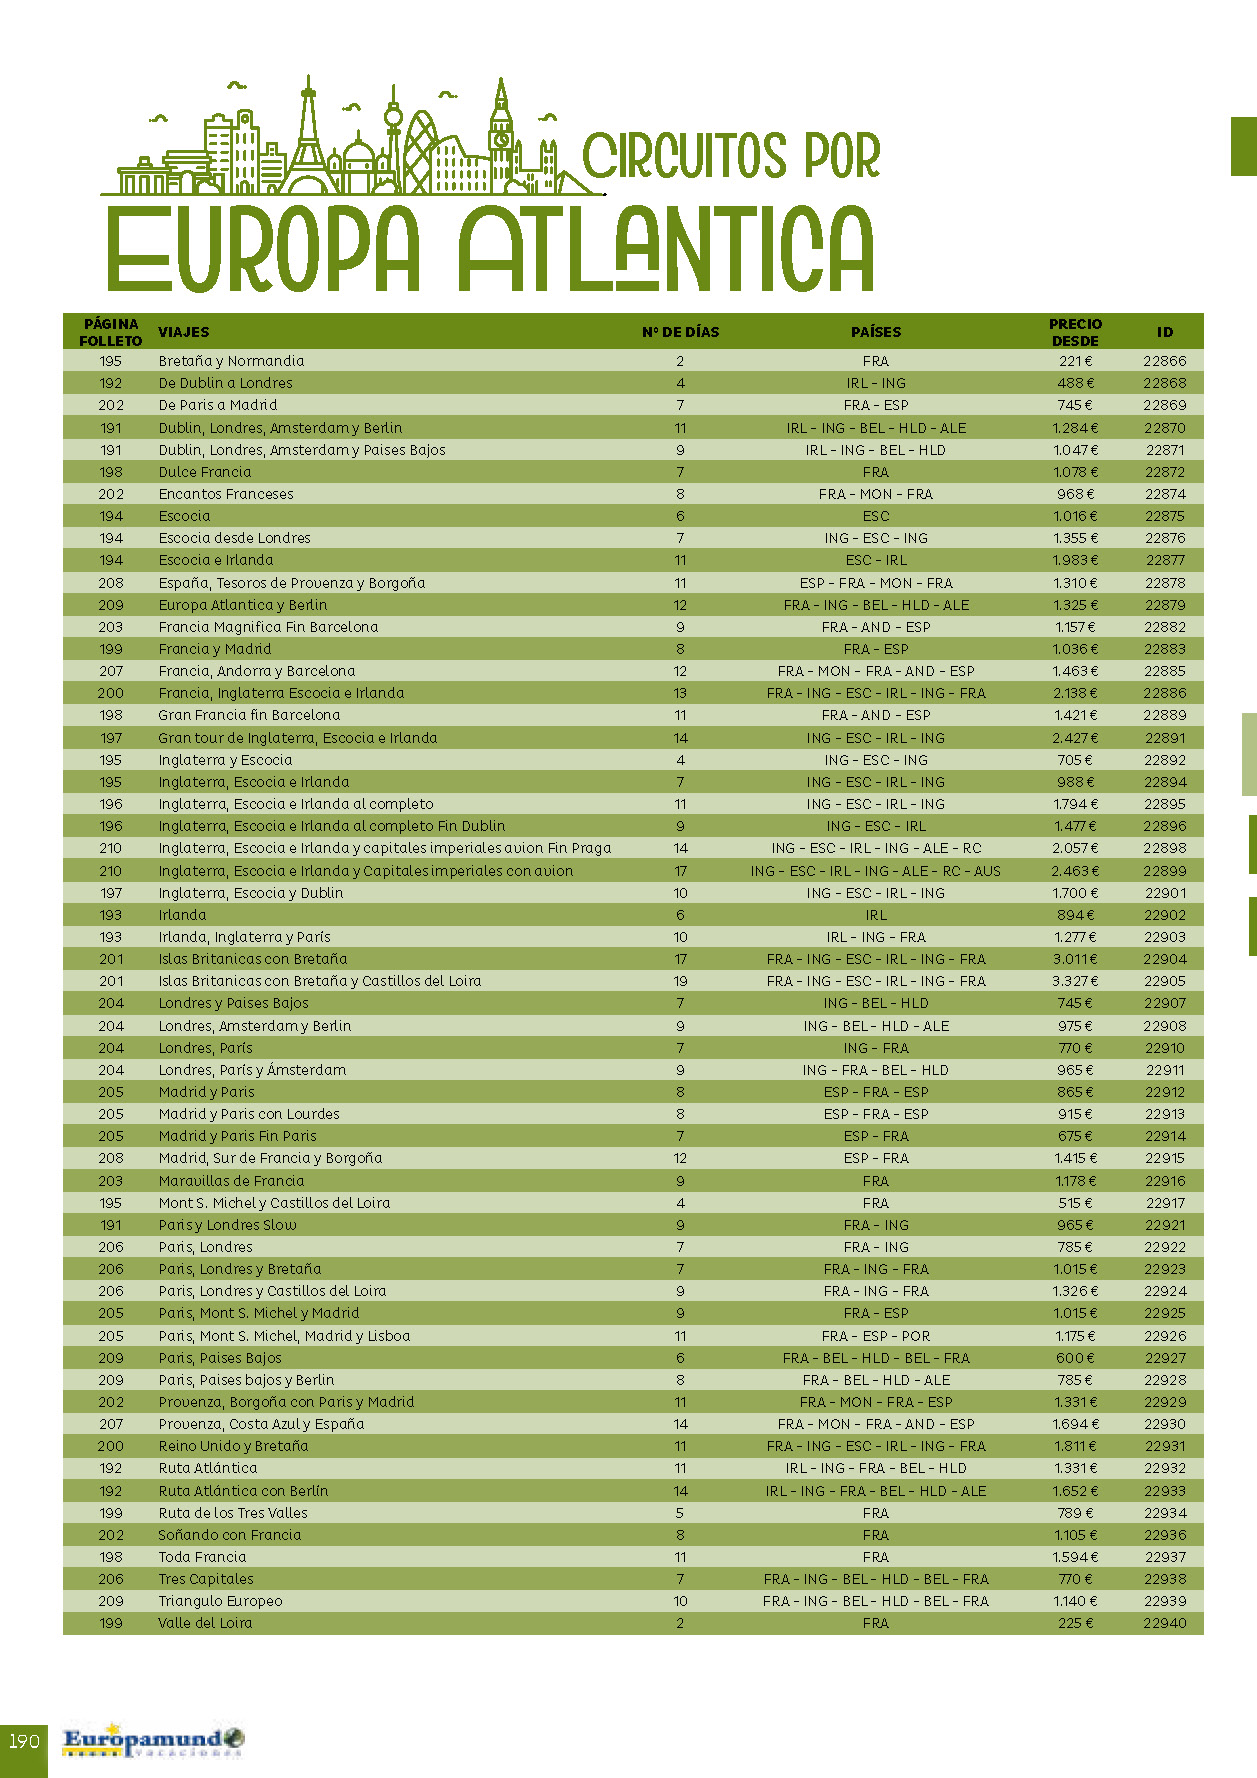 Catalogo Europamundo Vacaciones Circuitos por Europa Atlantica 2022-2024